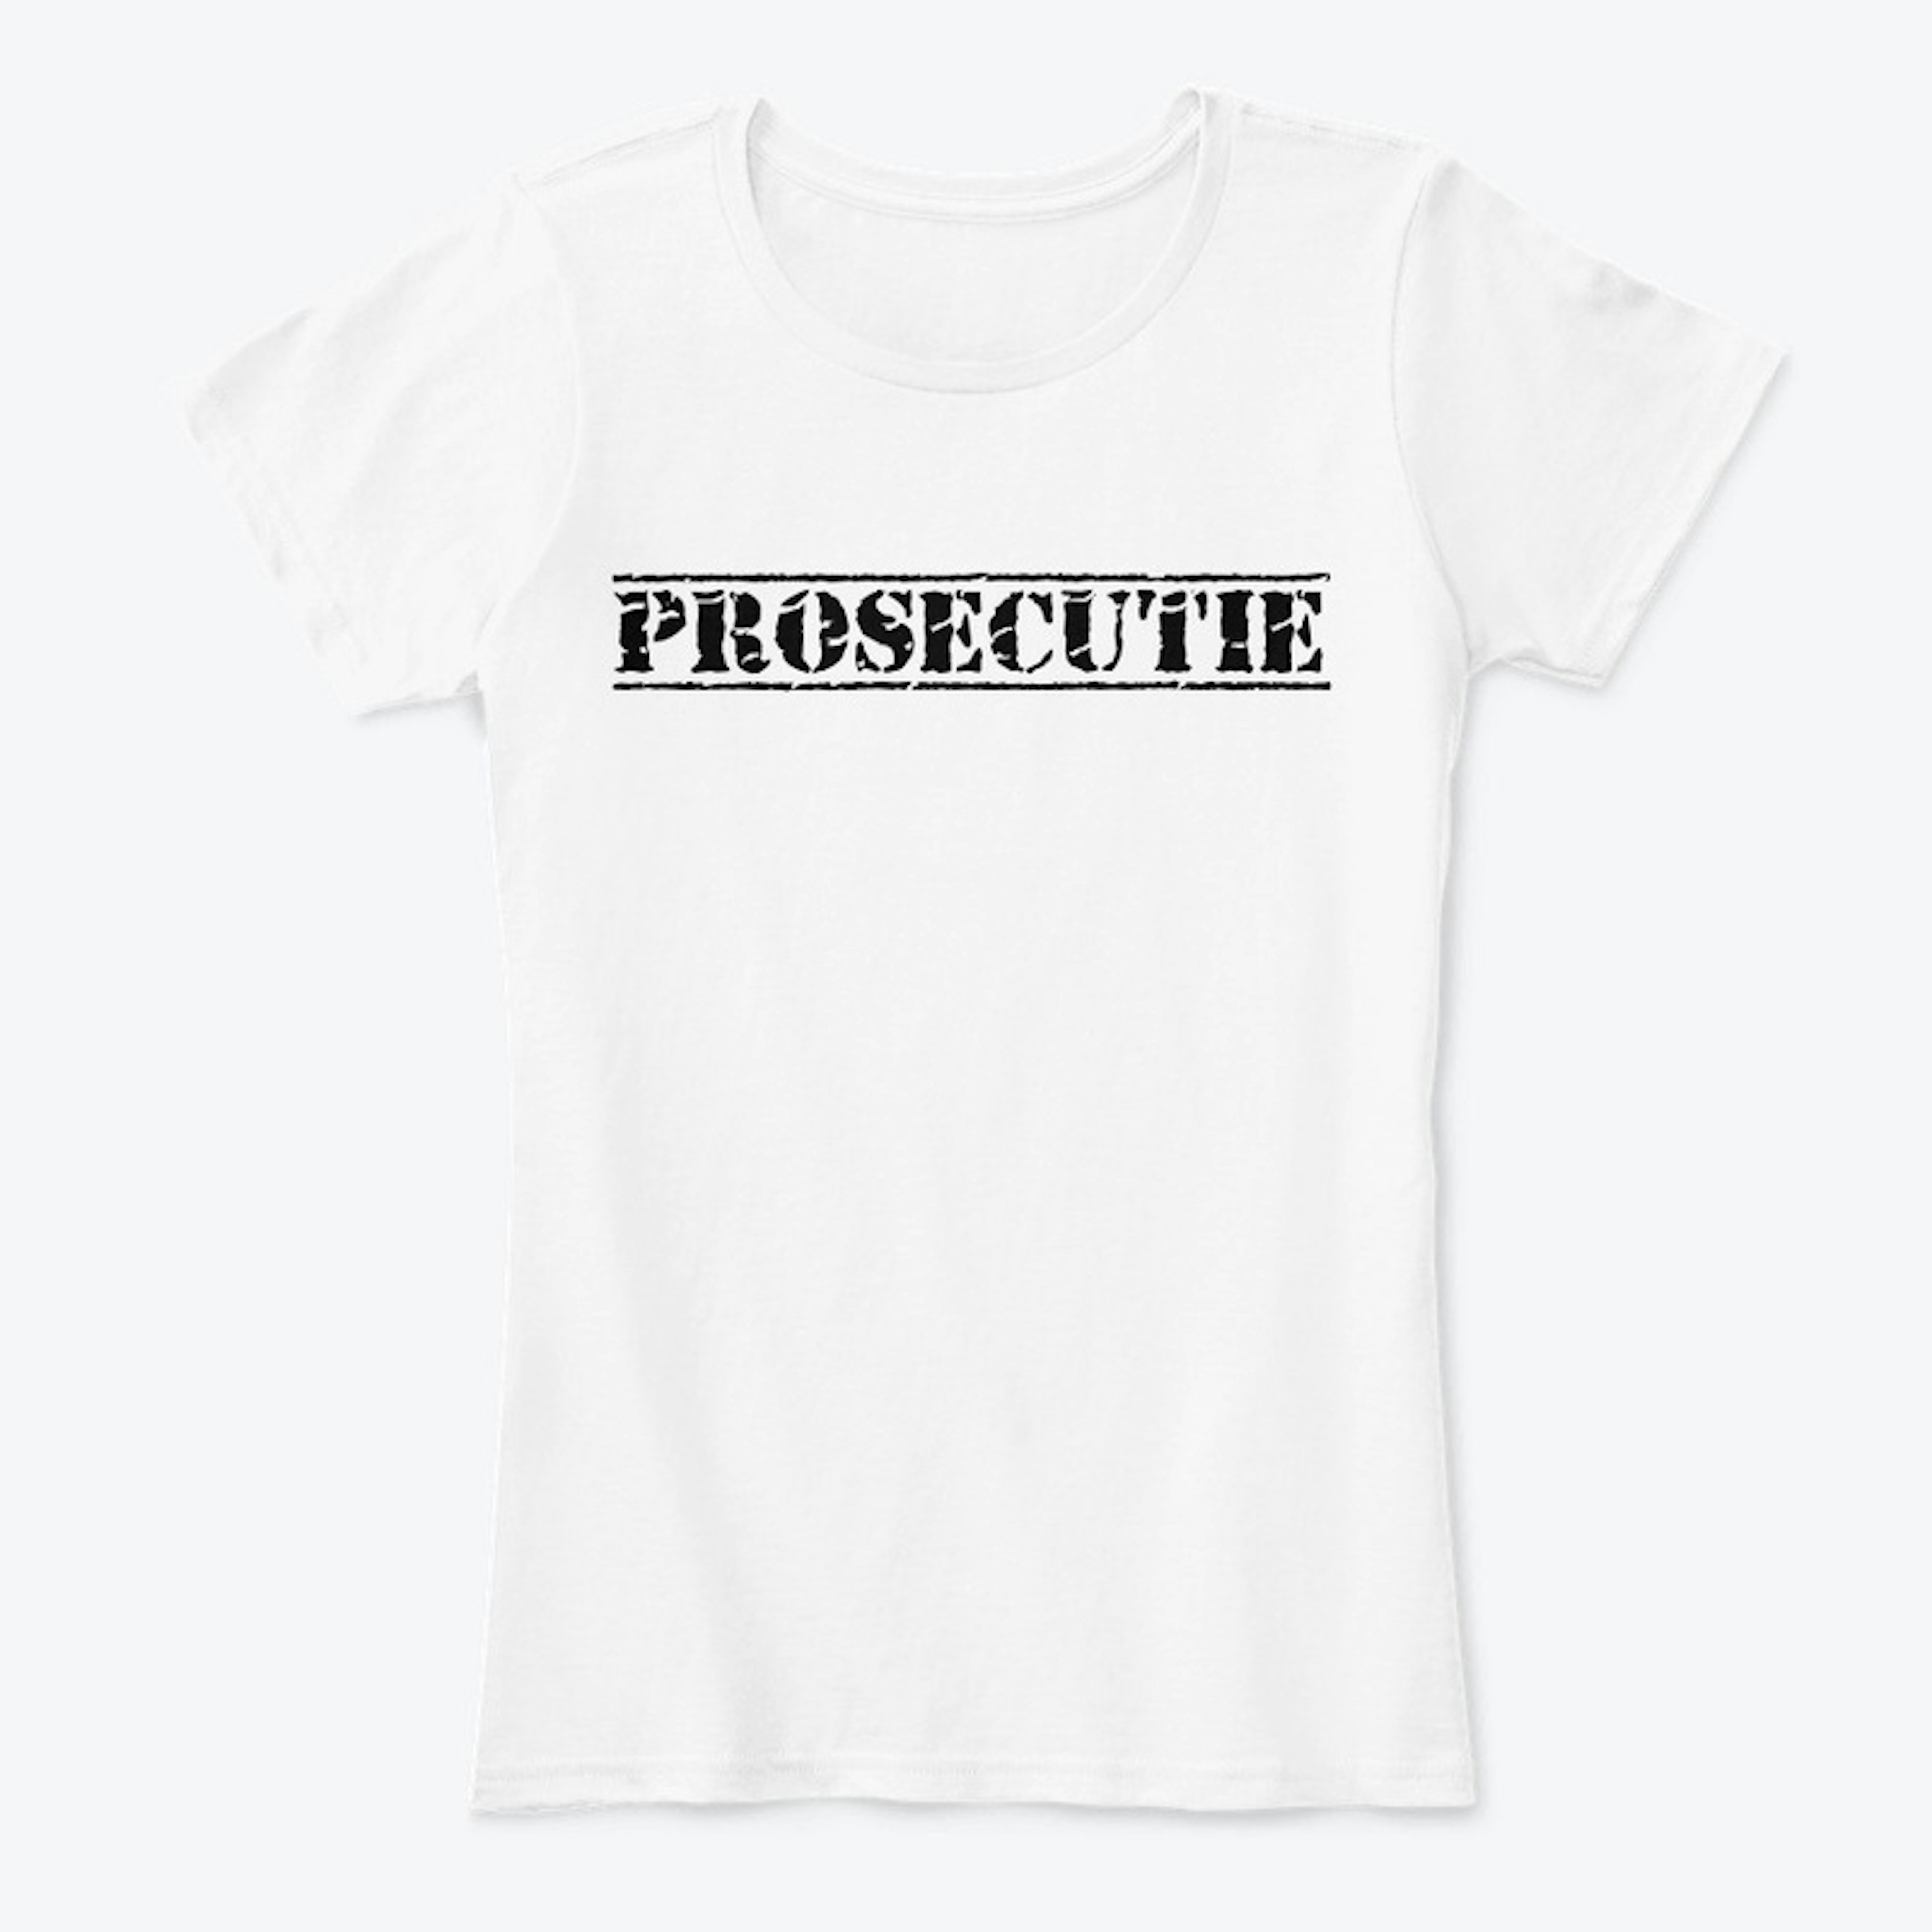 Prosecutie Women's Shirt